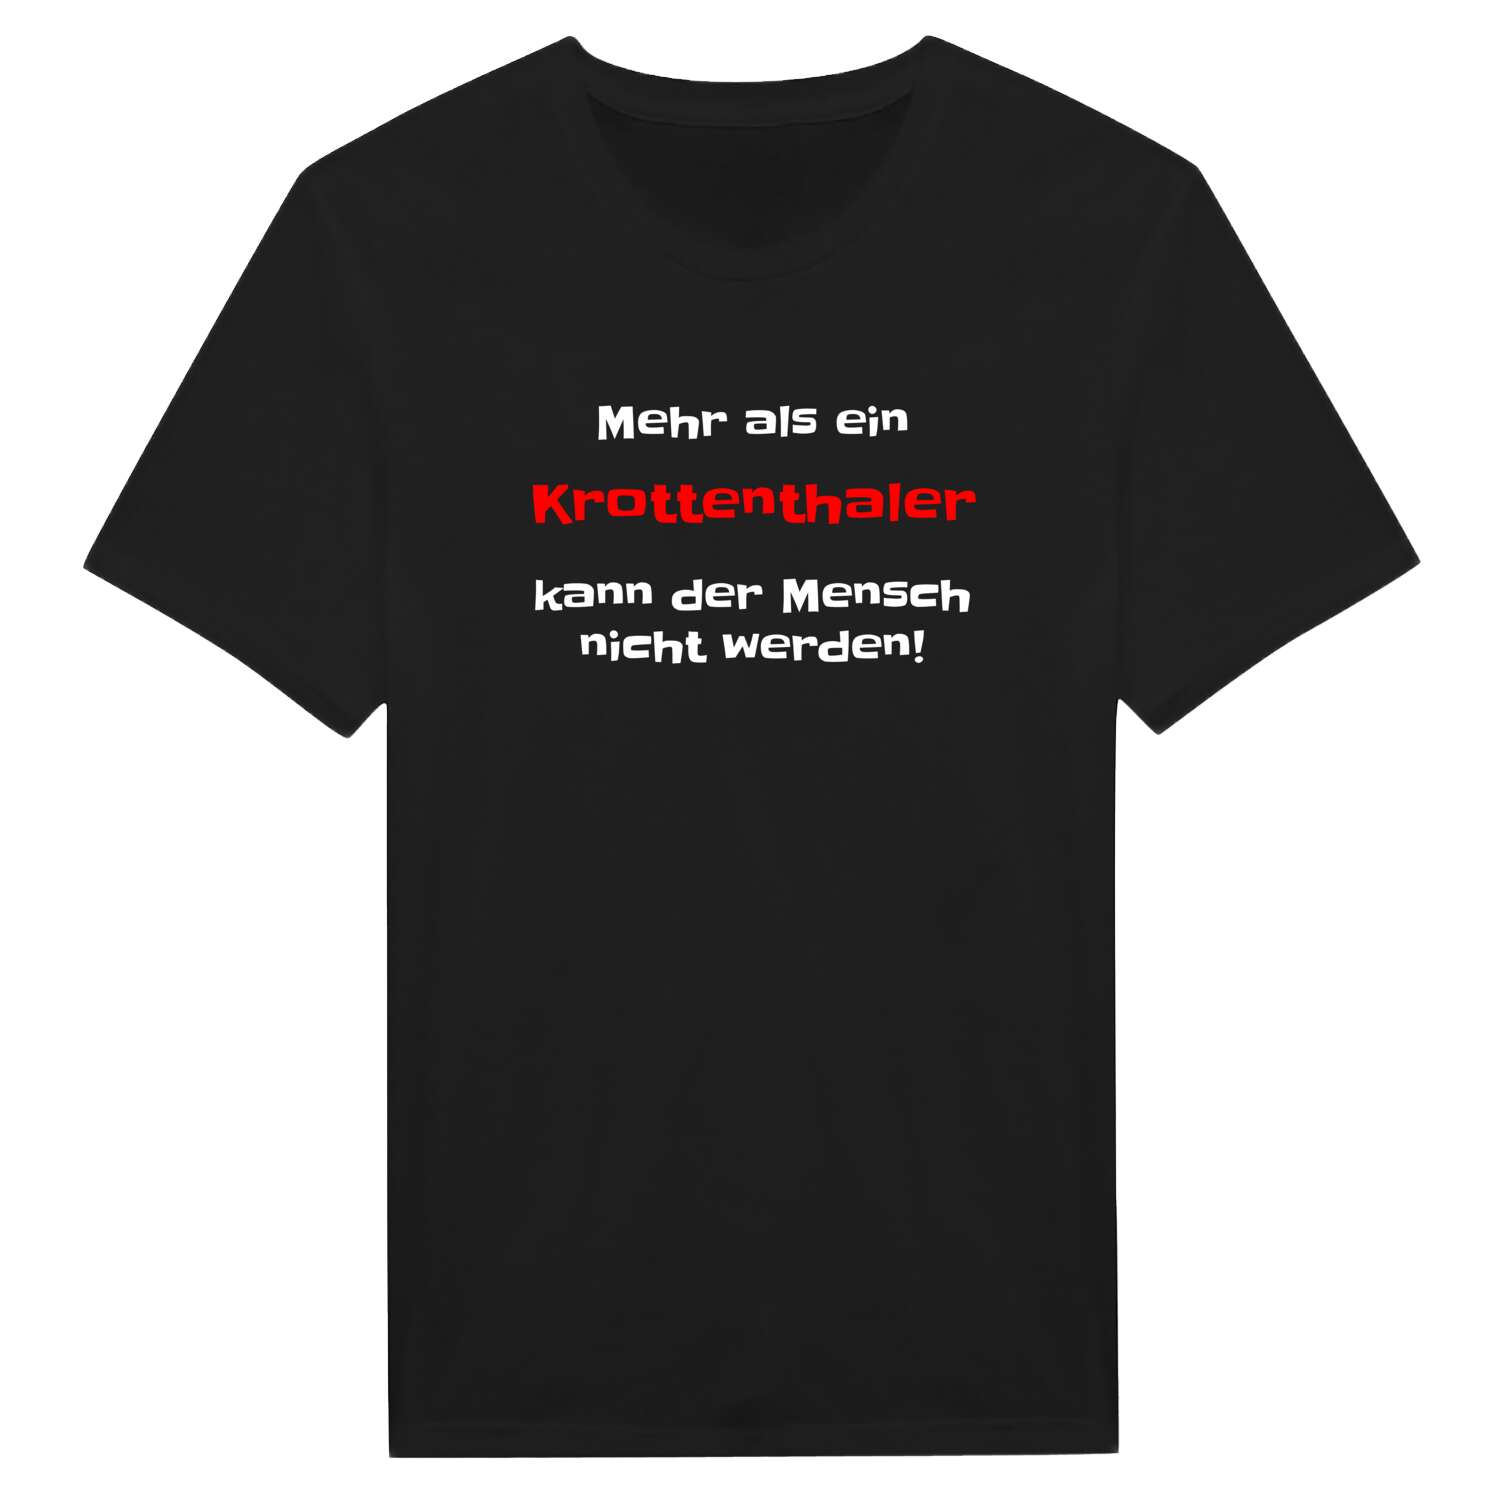 Krottenthal T-Shirt »Mehr als ein«